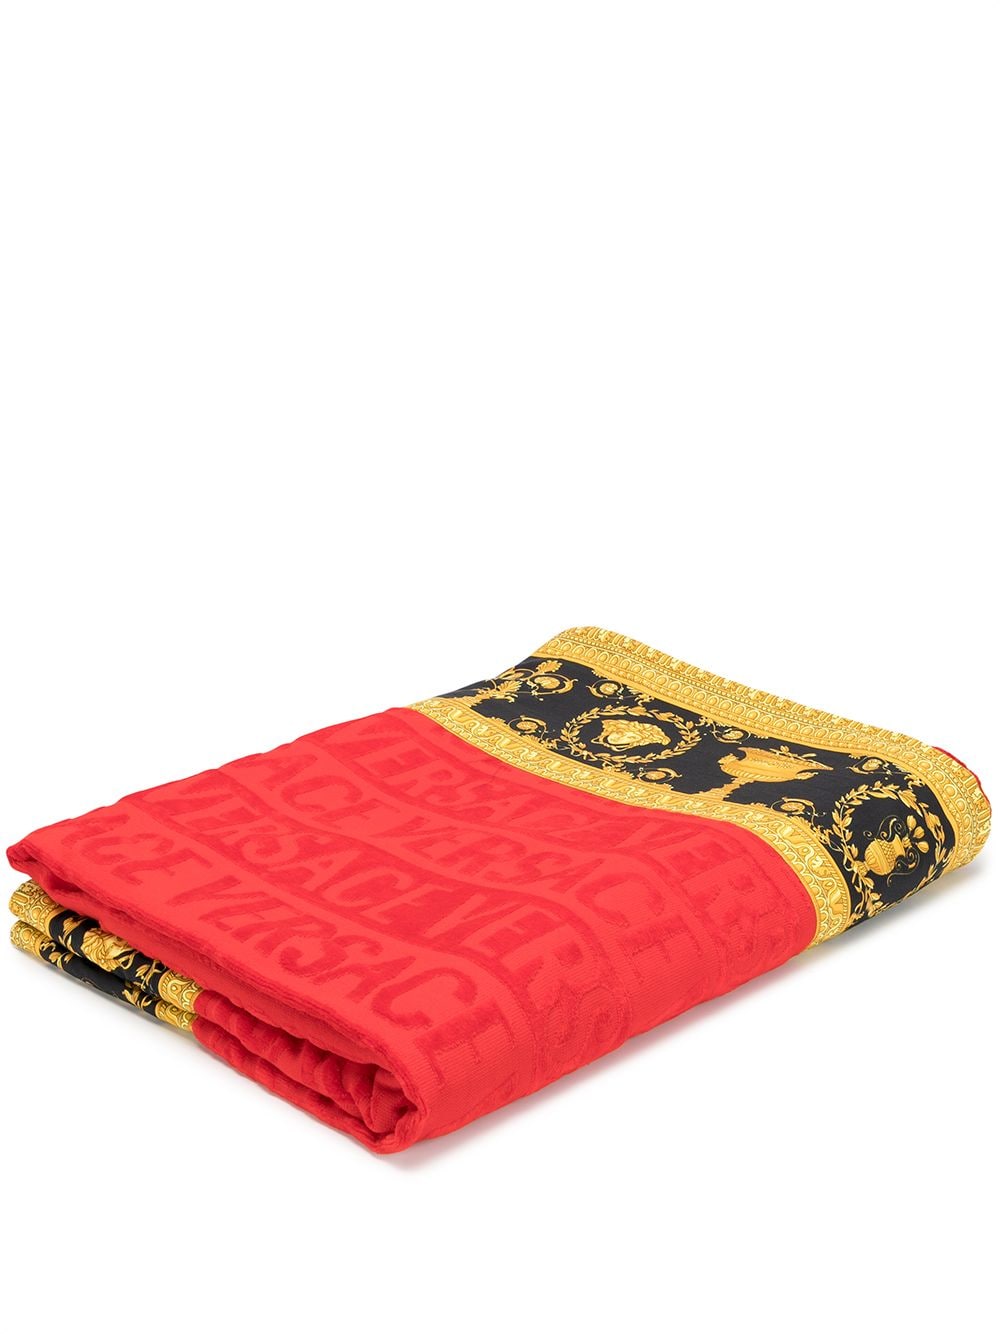 Versace Baroque trim beach towel - Red von Versace